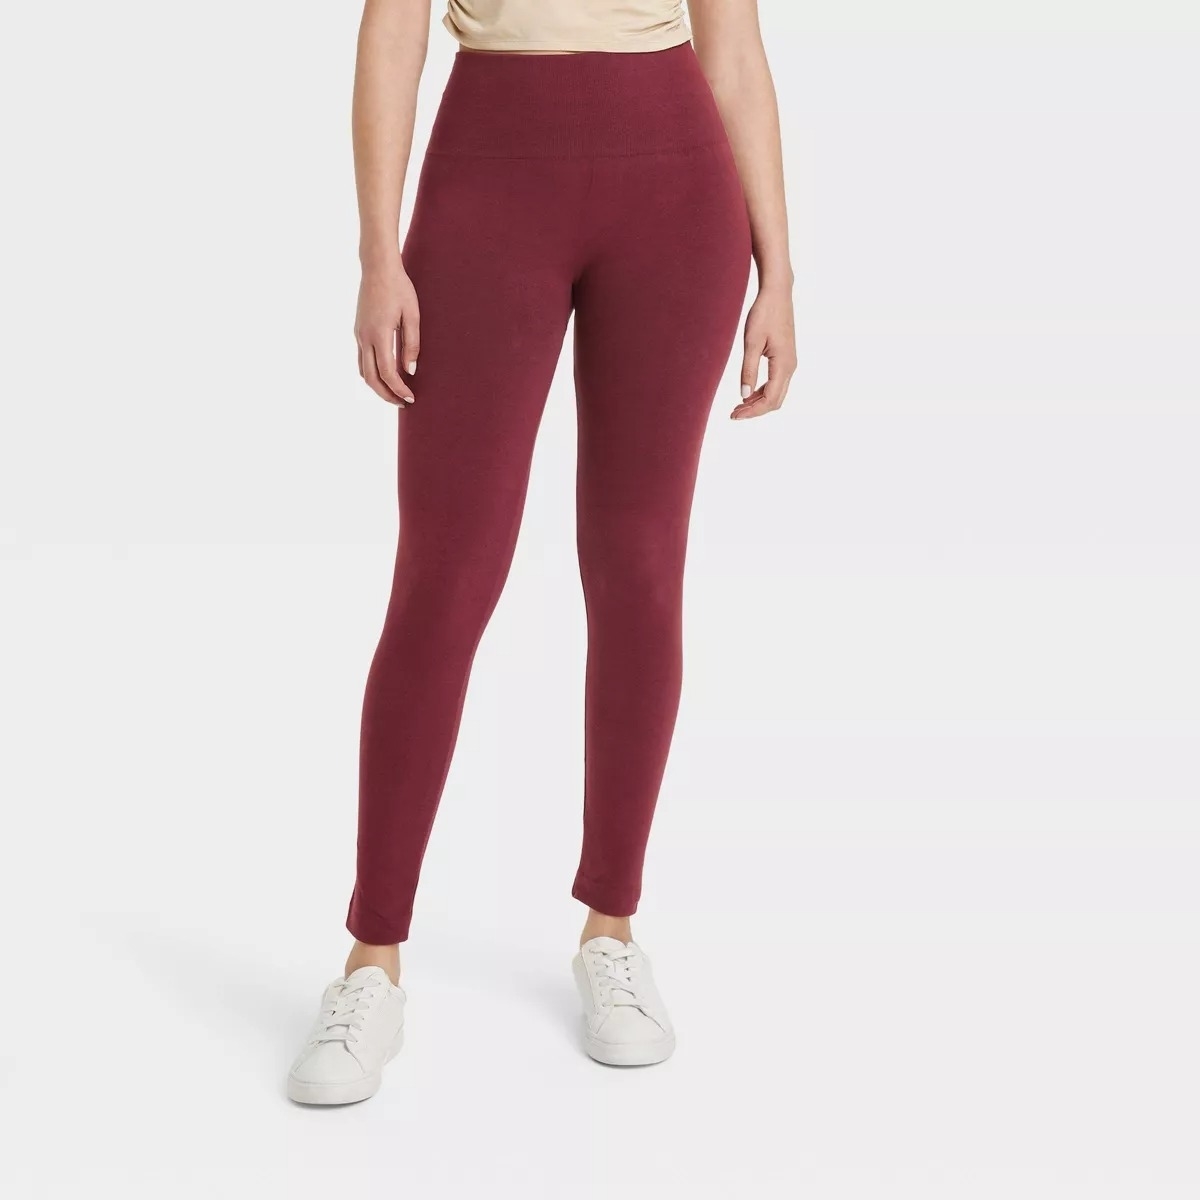 burgundy fleece lined leggings on model